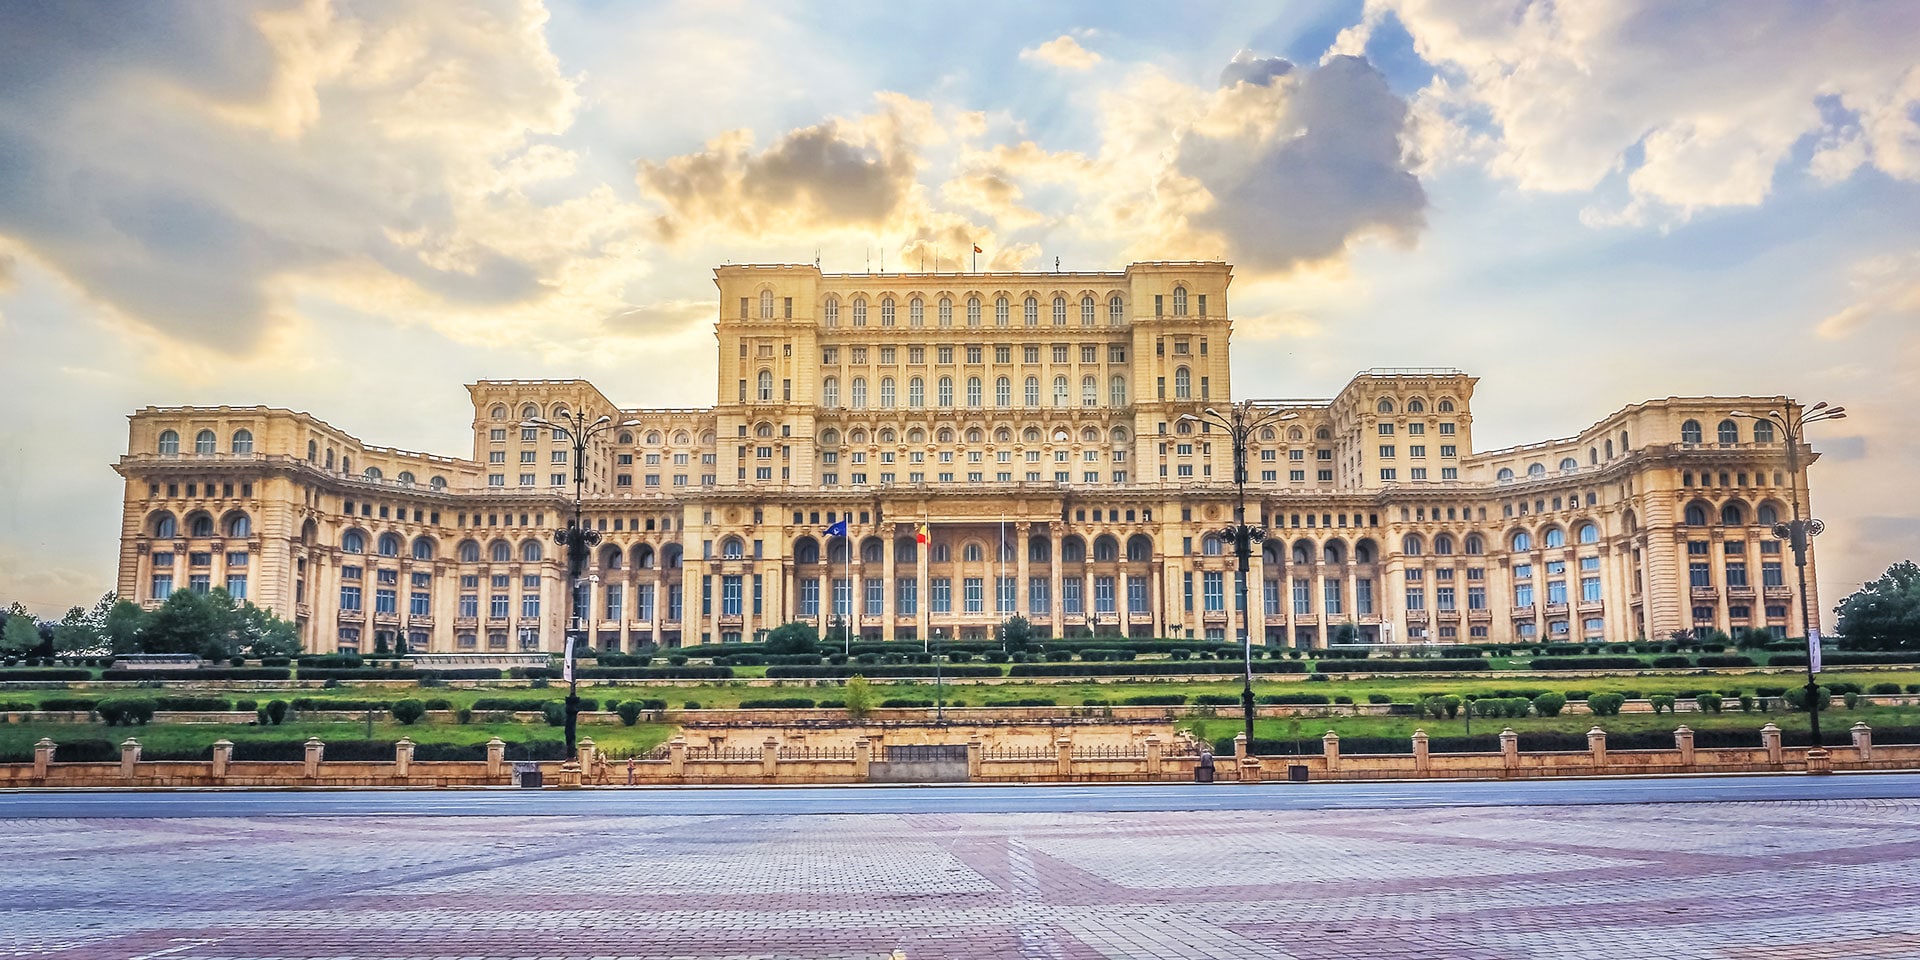 7 Things to Do in Bucharest | Marriott Bonvoy Traveler